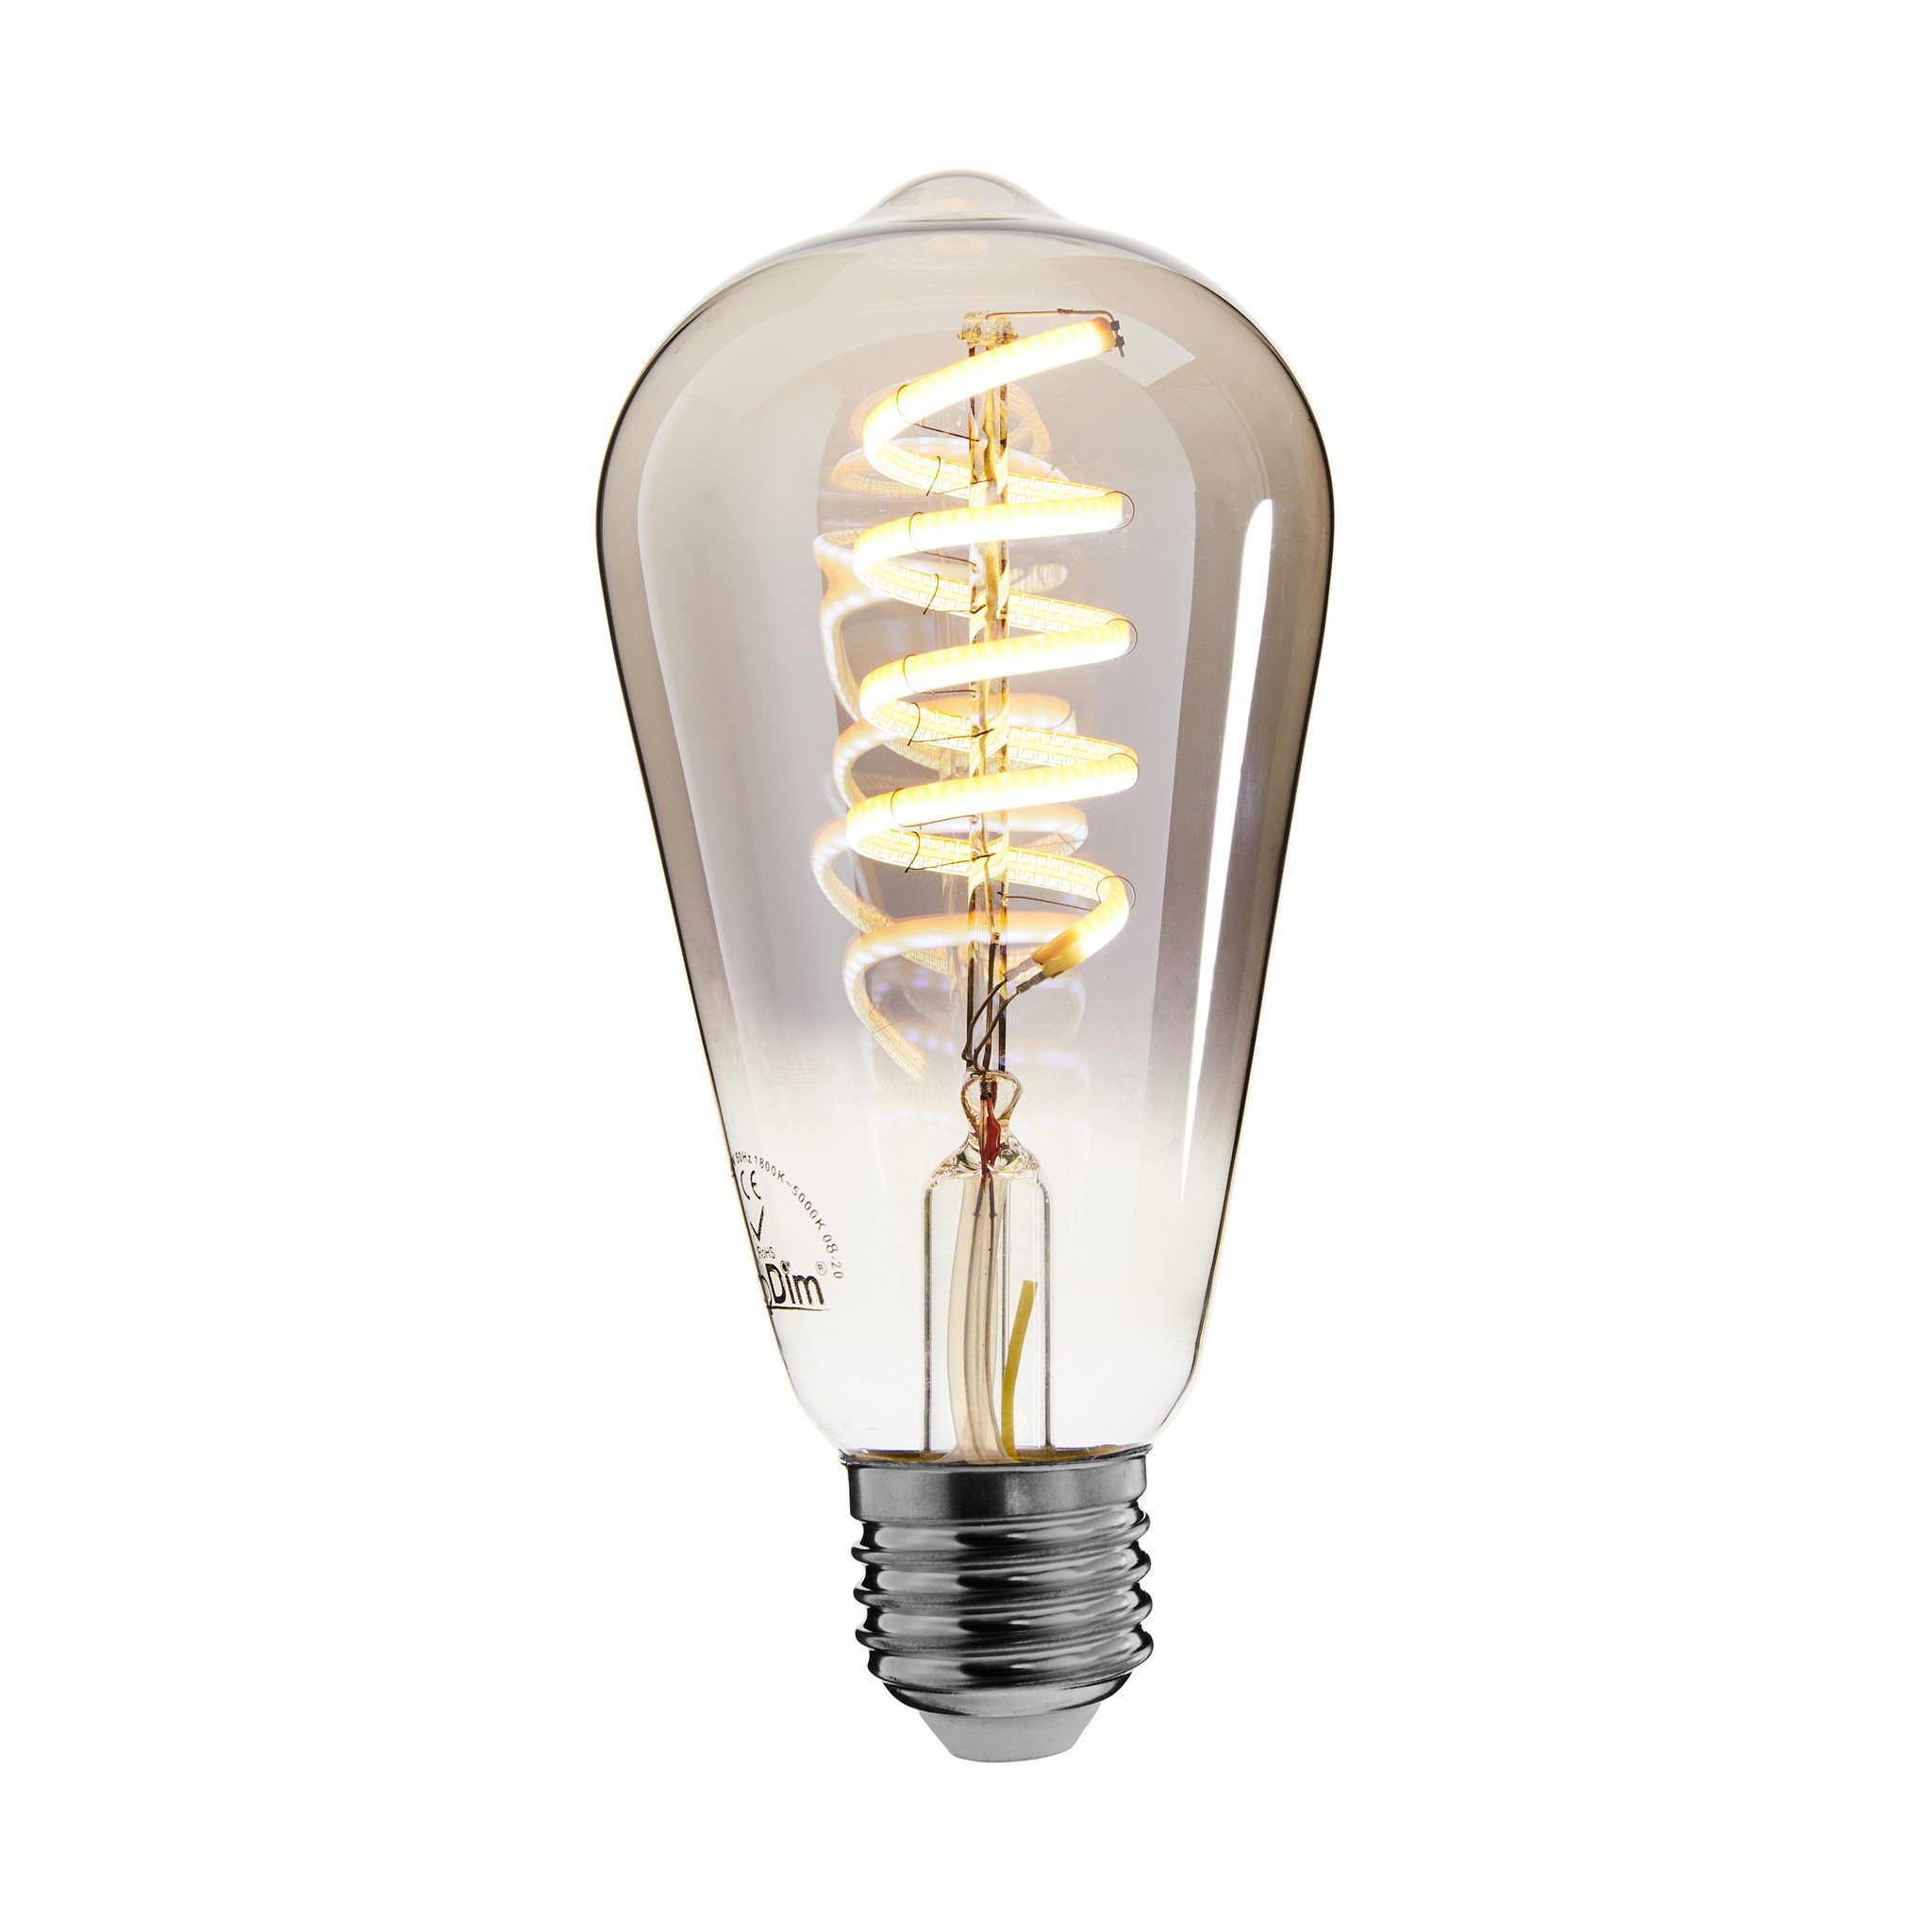 Grommen Soldaat Bungalow EcoDim Smart LED filament lamp dimbaar E27 - ST64 Smokey 1800K-5000K -  Verlichtingpaleis